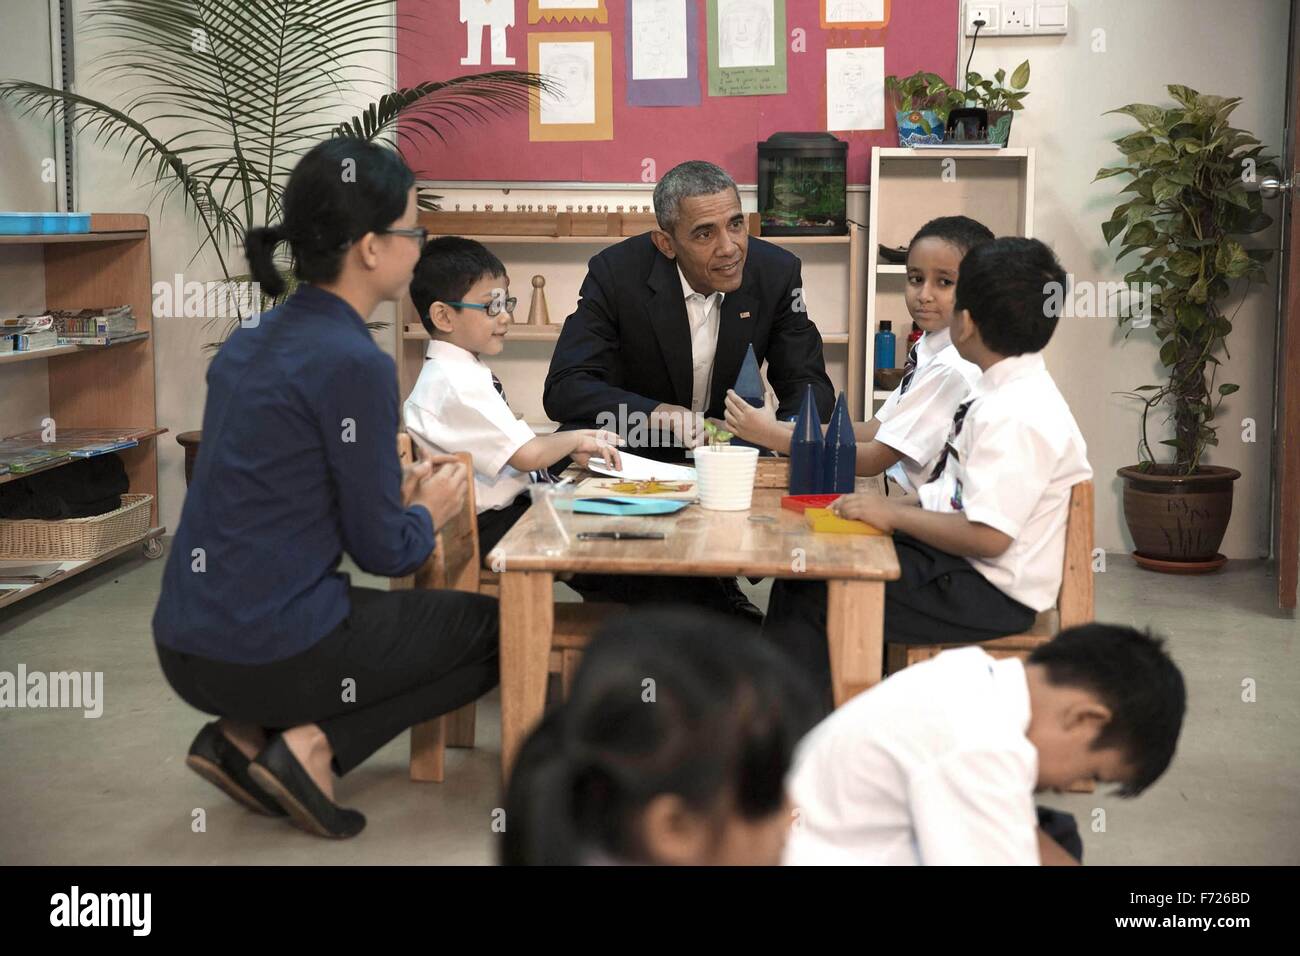 US-Präsident Barack Obama spricht mit einem kleinen Jungen während einer Tour durch die würde für Children Foundation 21. November 2015 in Kuala Lumpur, Malaysia. Das Zentrum unterstützt Arme Familien und Flüchtlingen, darunter die von Myanmar und Syrien. Stockfoto